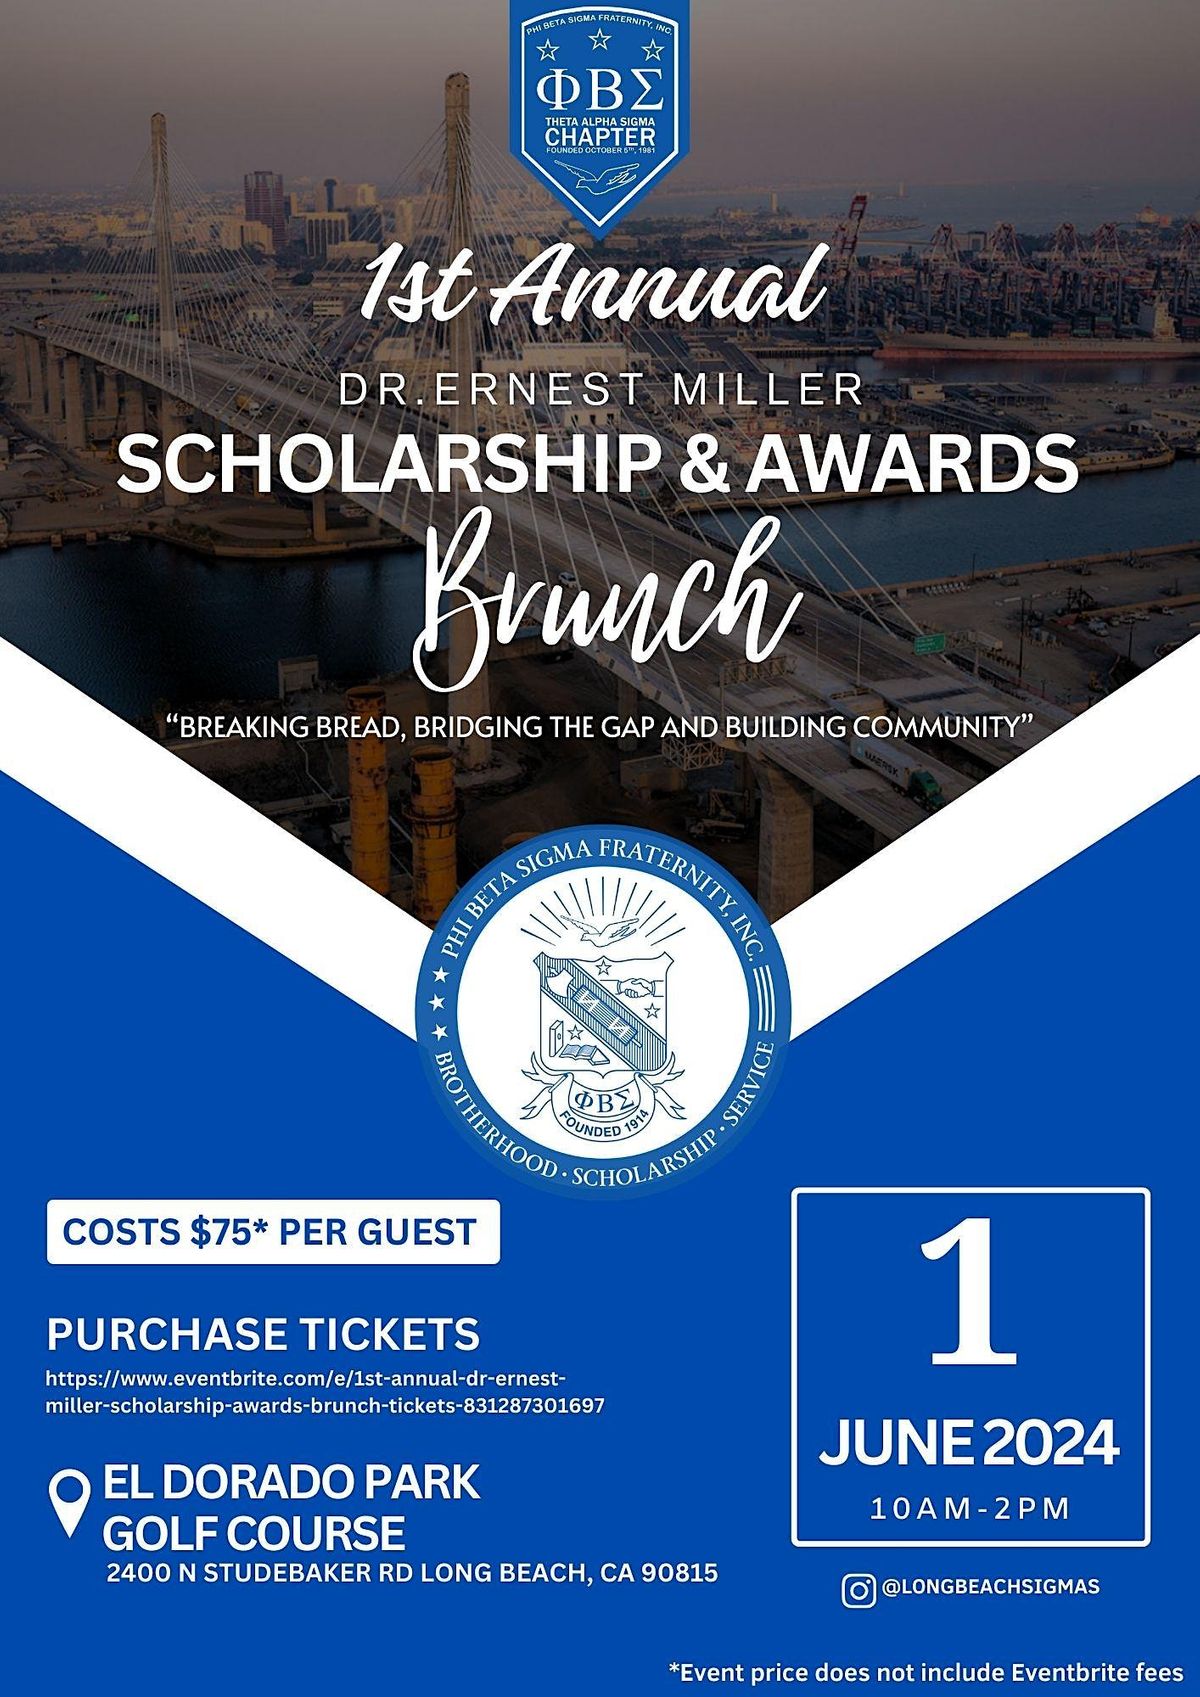 1st Annual Dr. Ernest Miller Scholarship & Awards Brunch